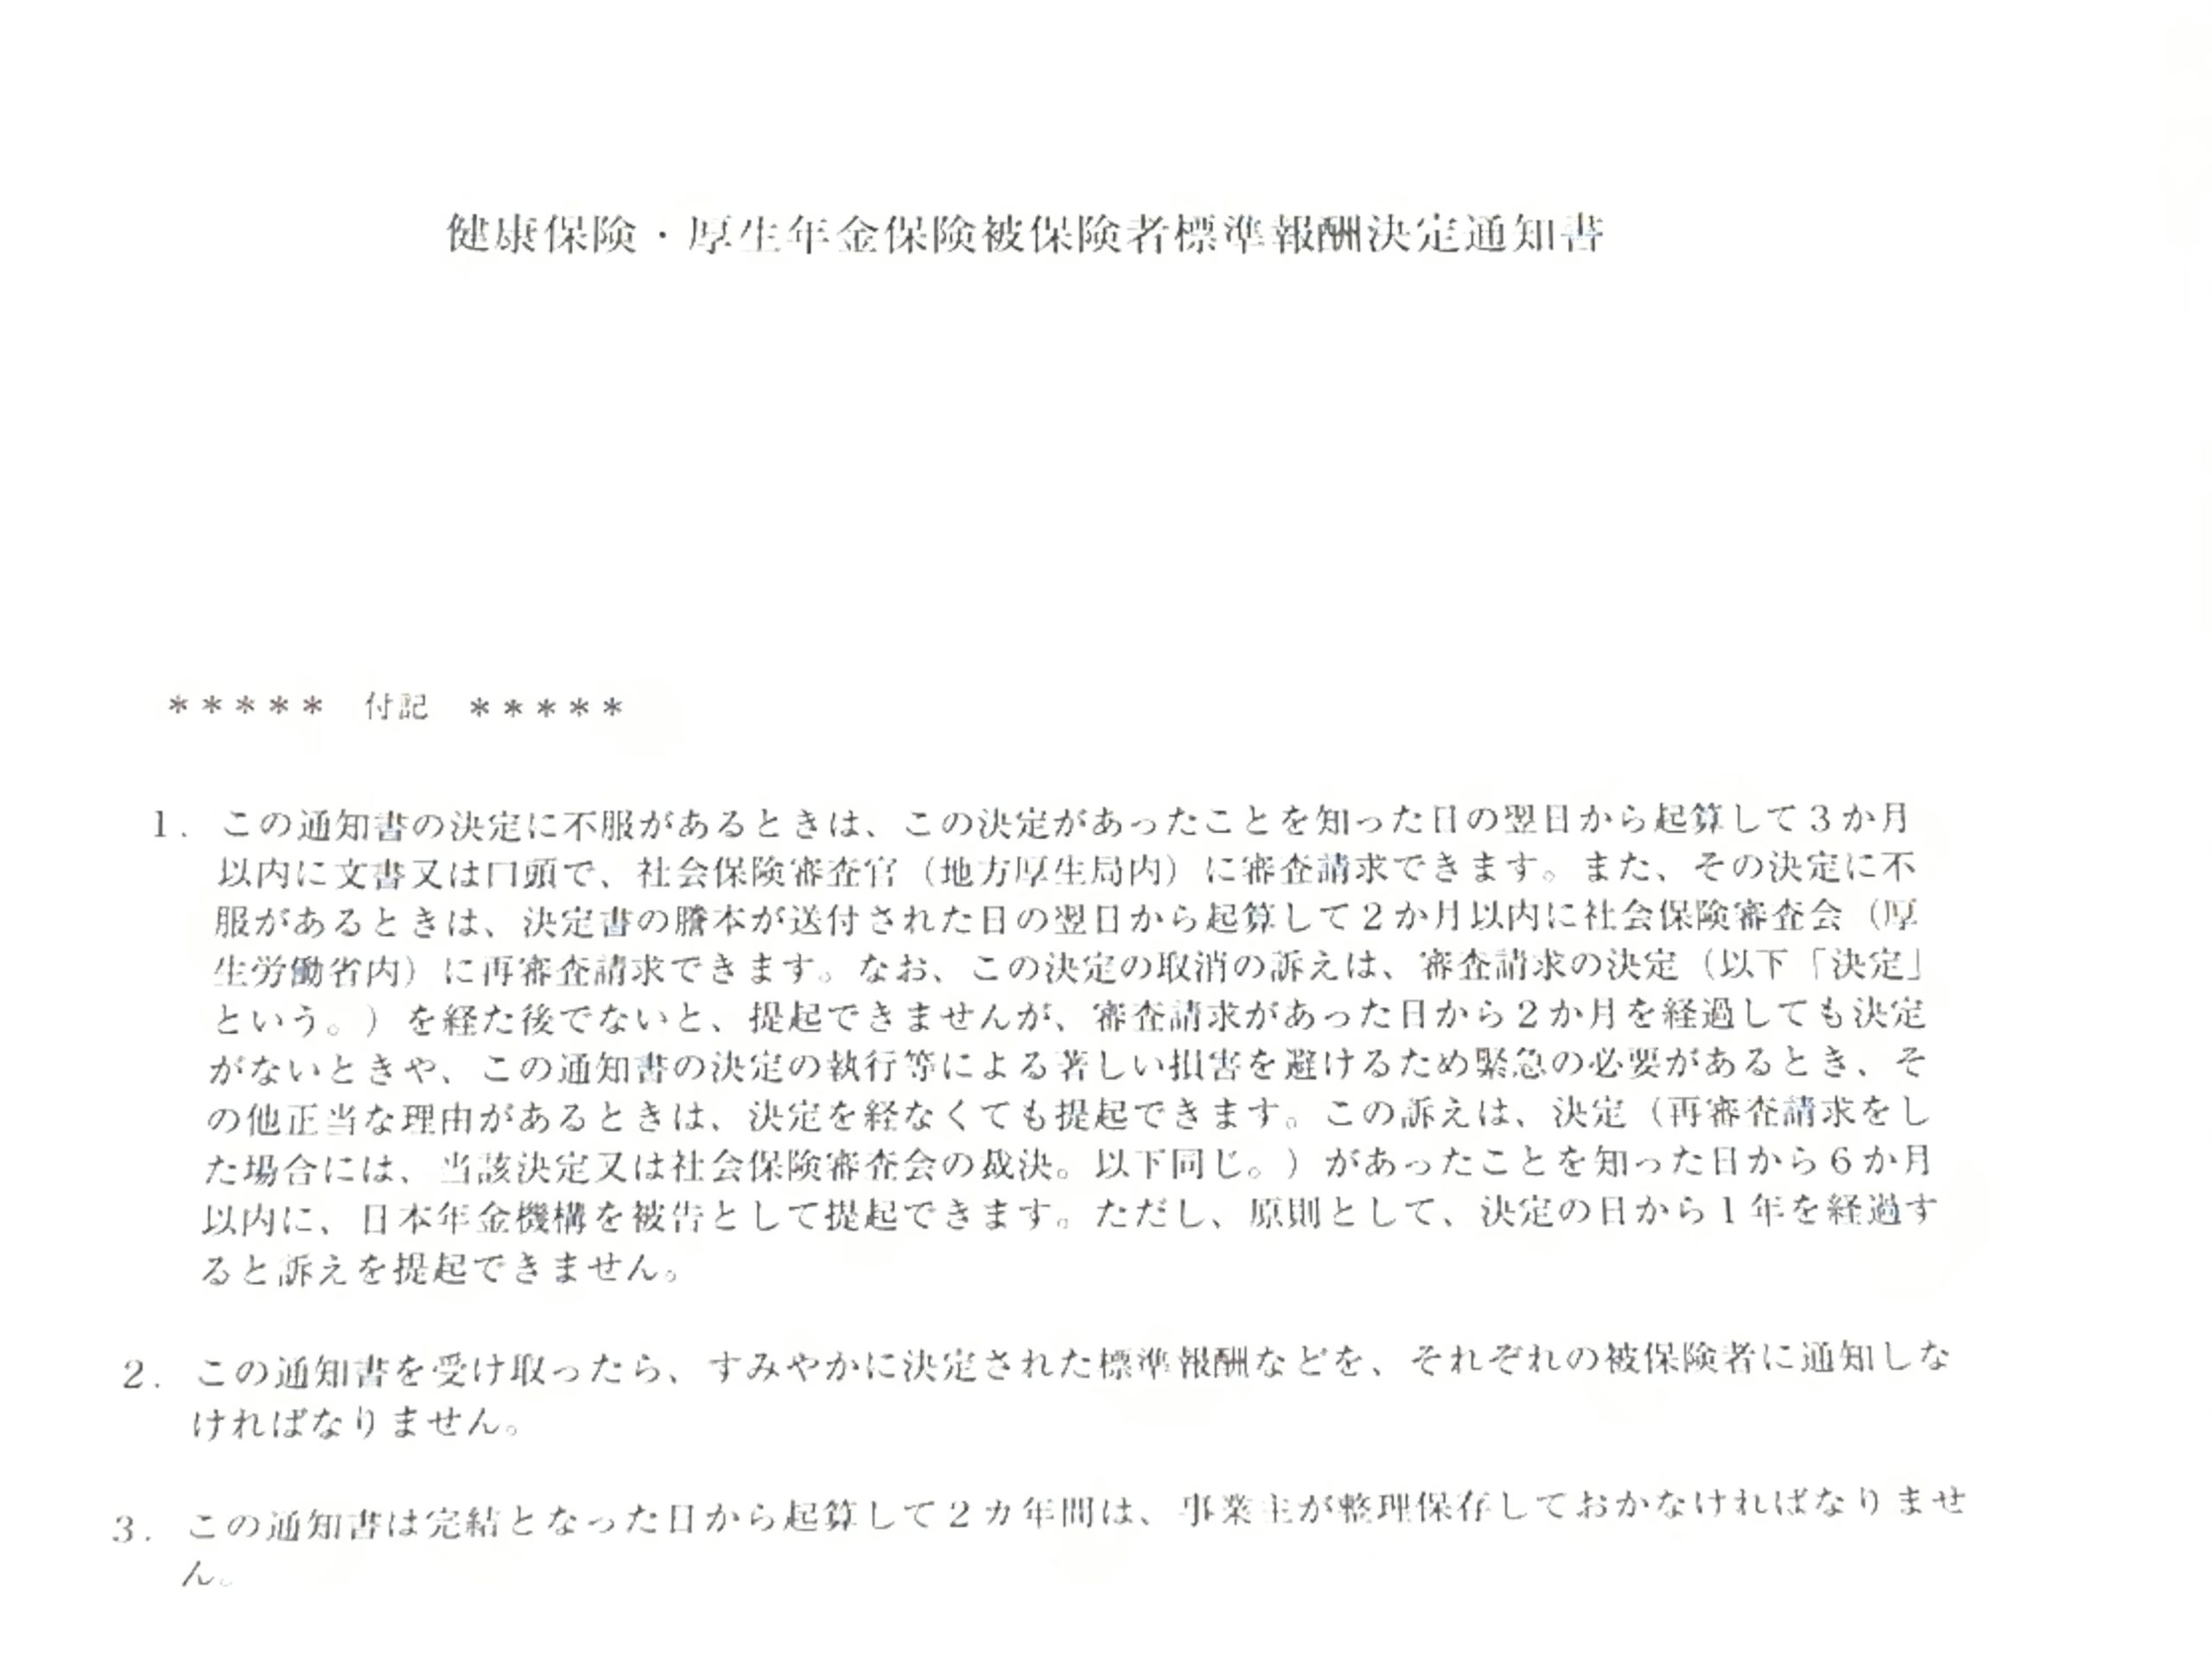 年金事務所東京広域事務センターより社会保険の標準報酬決定通知書が送付されてきました